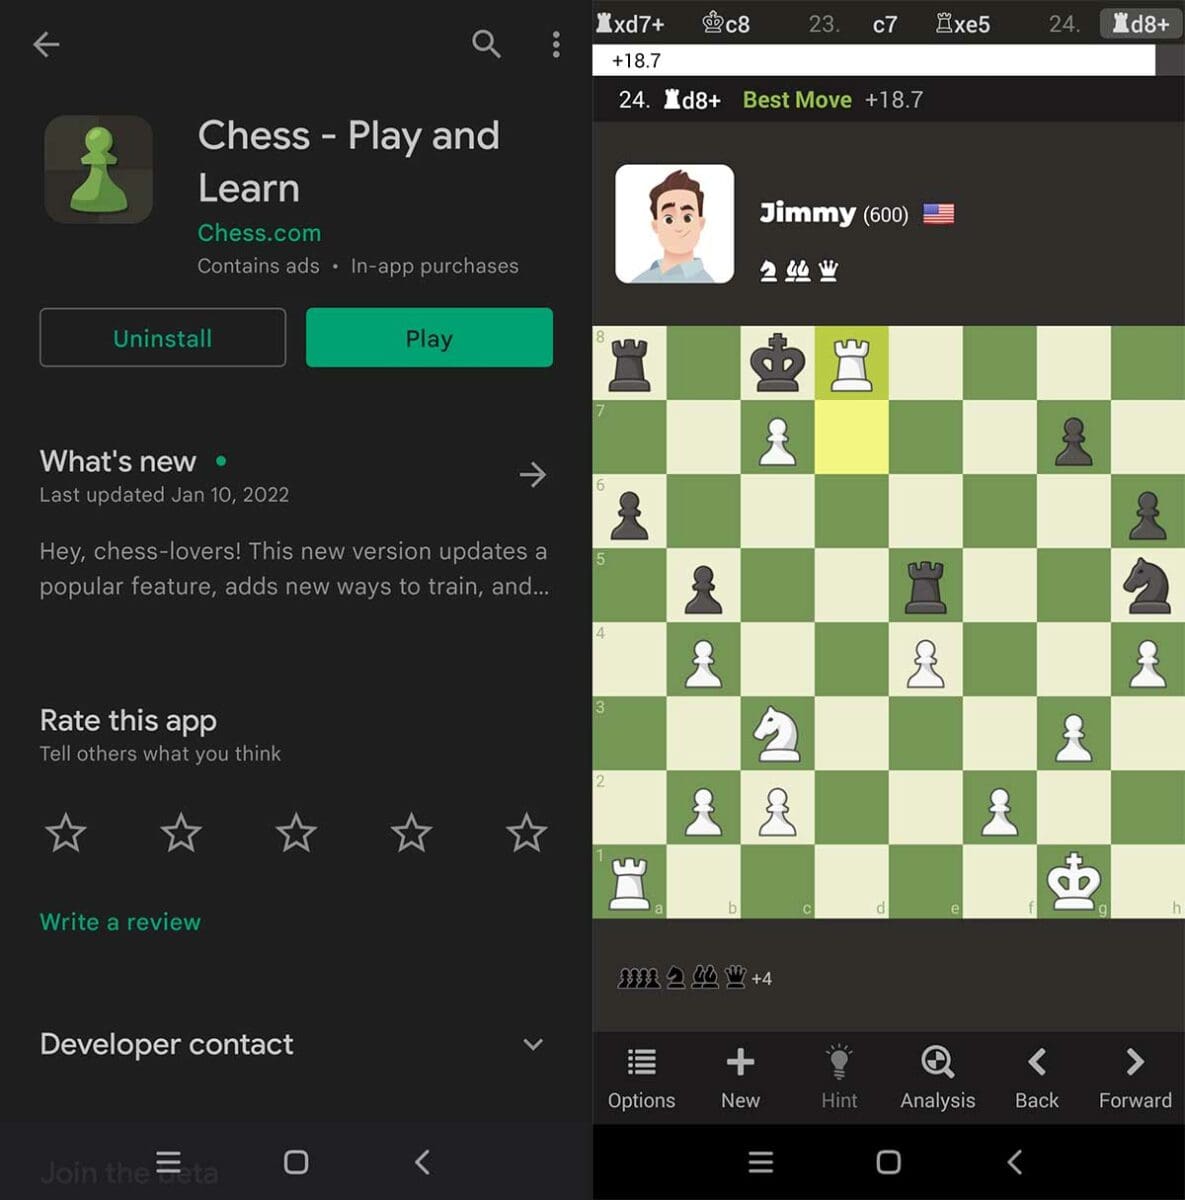 chess-com